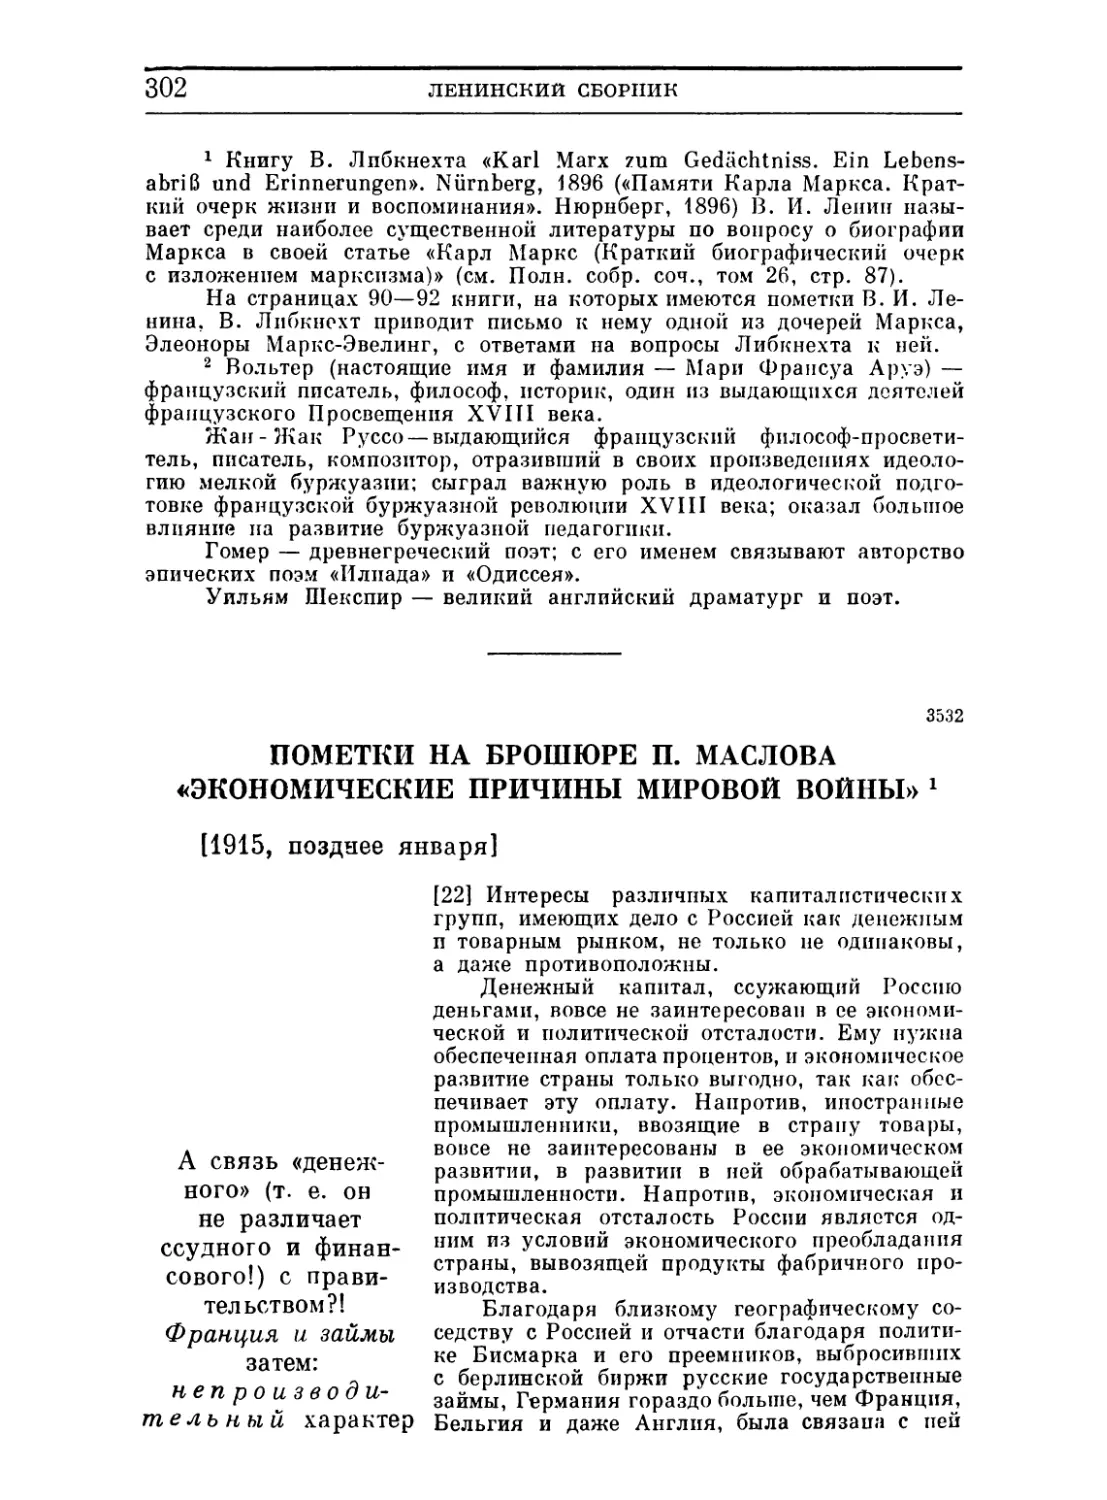 Пометки на брошюре П. Маслова «Экономические причины мировой войны». Позднее января 1915